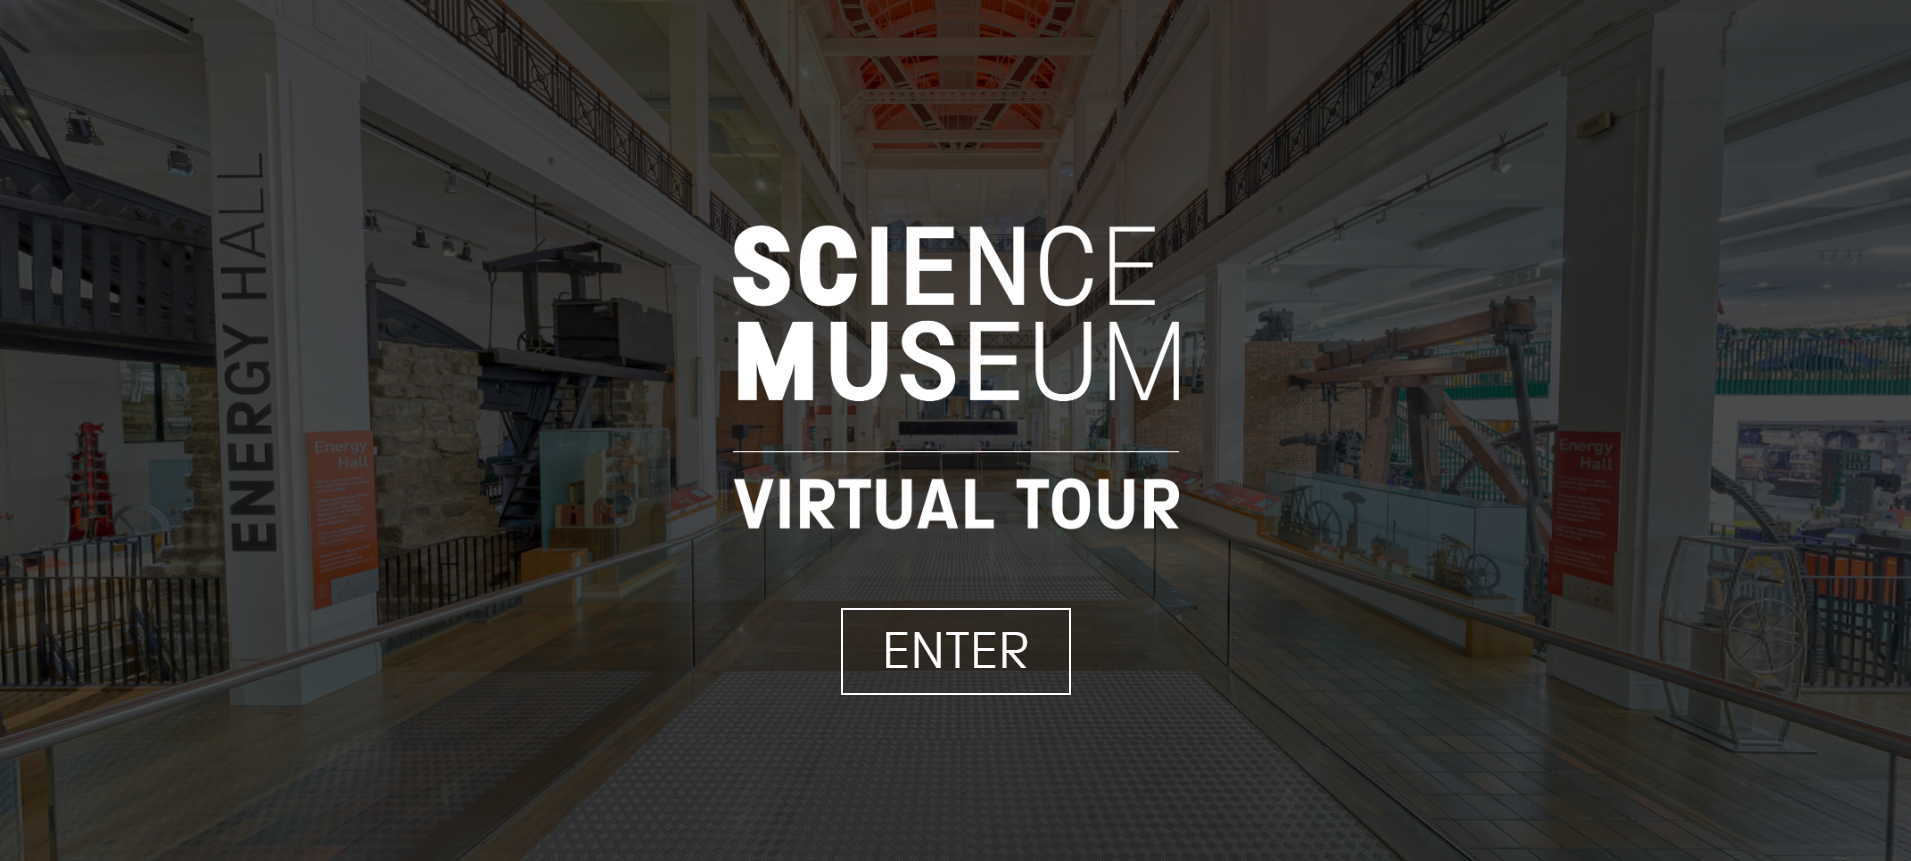 Science museum virtual tour